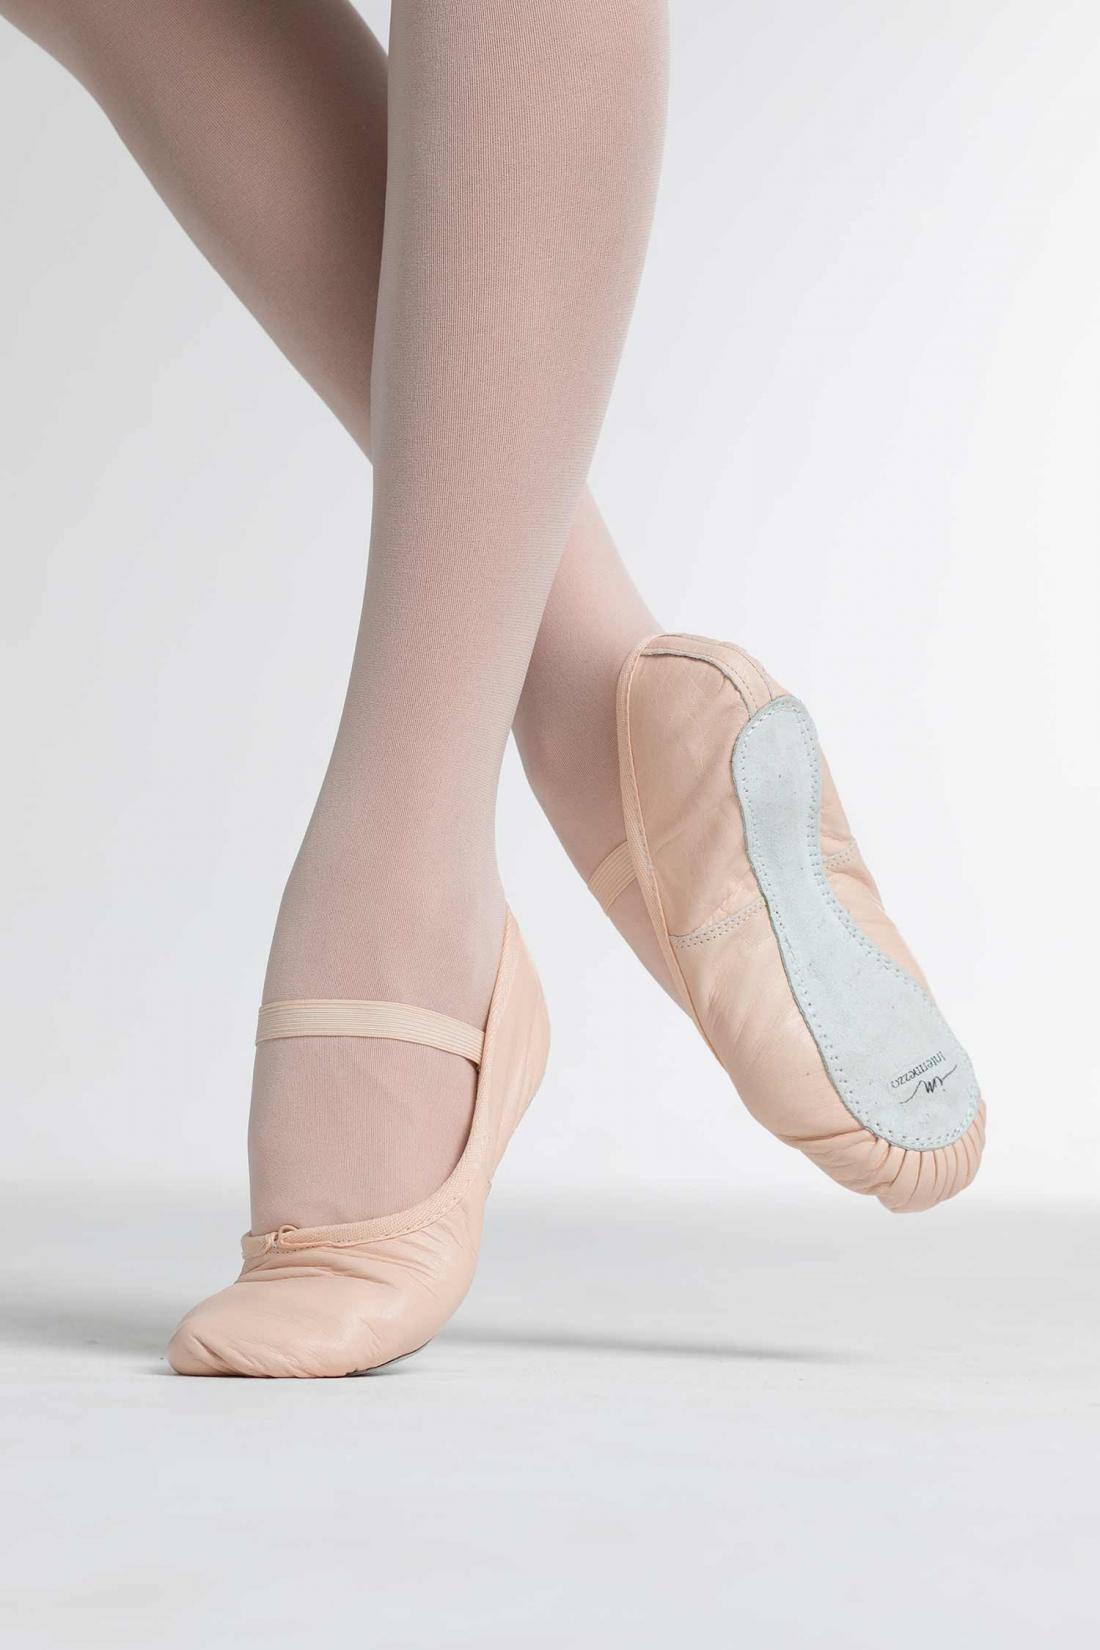 Comprar online Zapatillas media punta de ballet NINA de Dansez